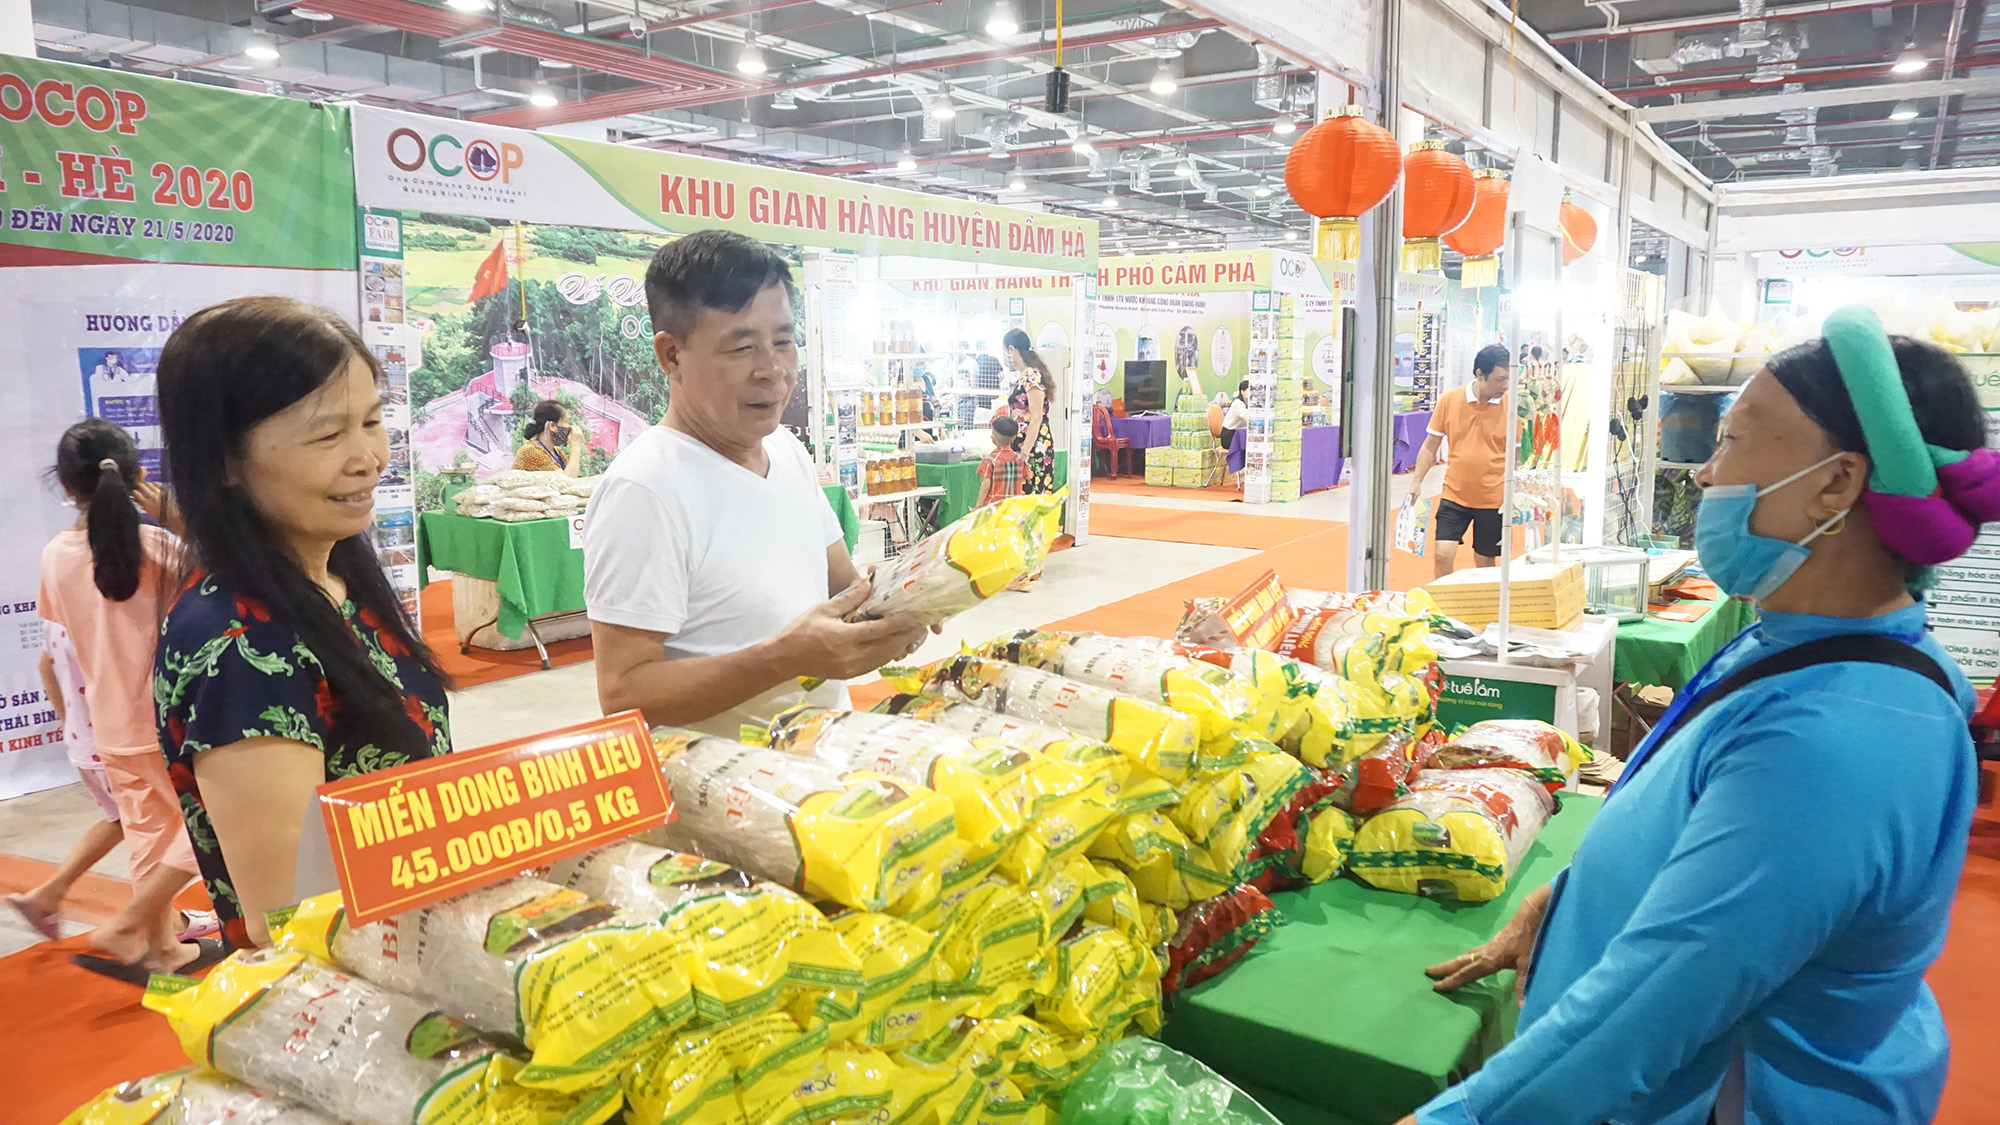 Gian hàng OCOP huyện Bình Liêu tham gia Hội chợ OCOP Quảng Ninh - Hè 2020.